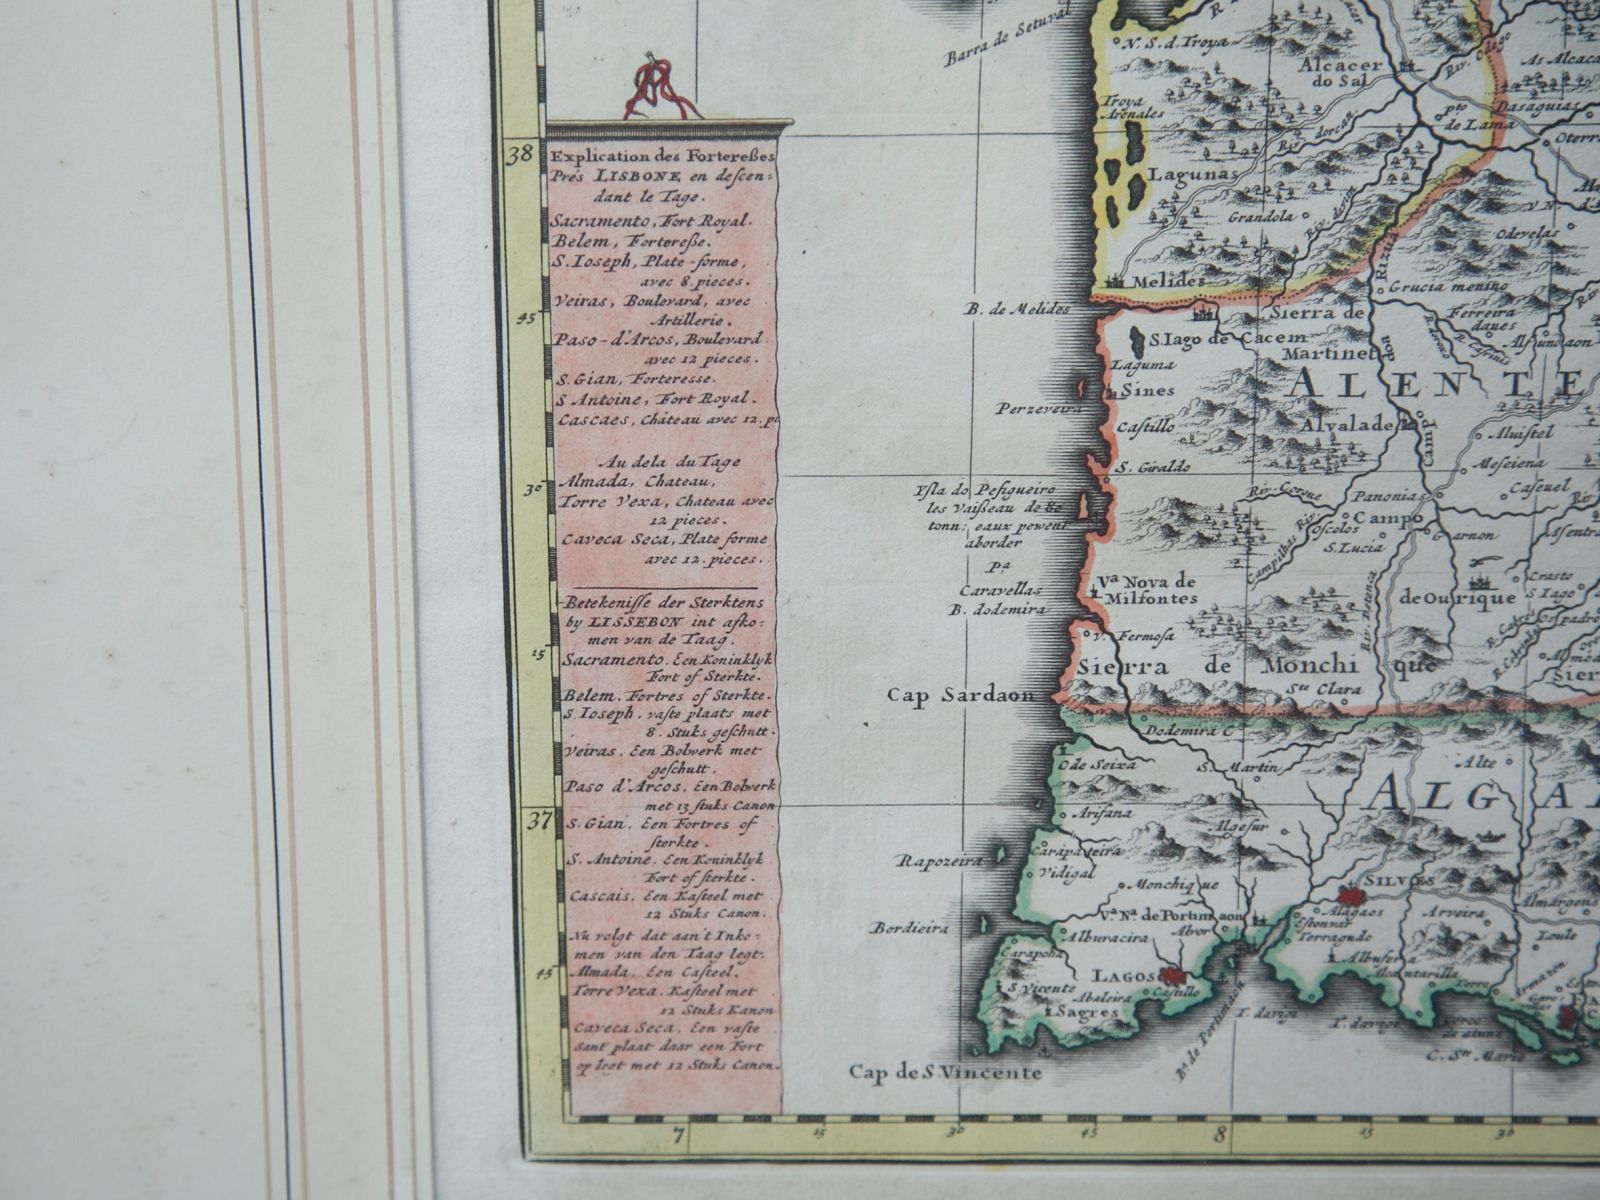 O verdadeiro mapa do Reino de Portugal /s : r/PORTUGALCARALHO